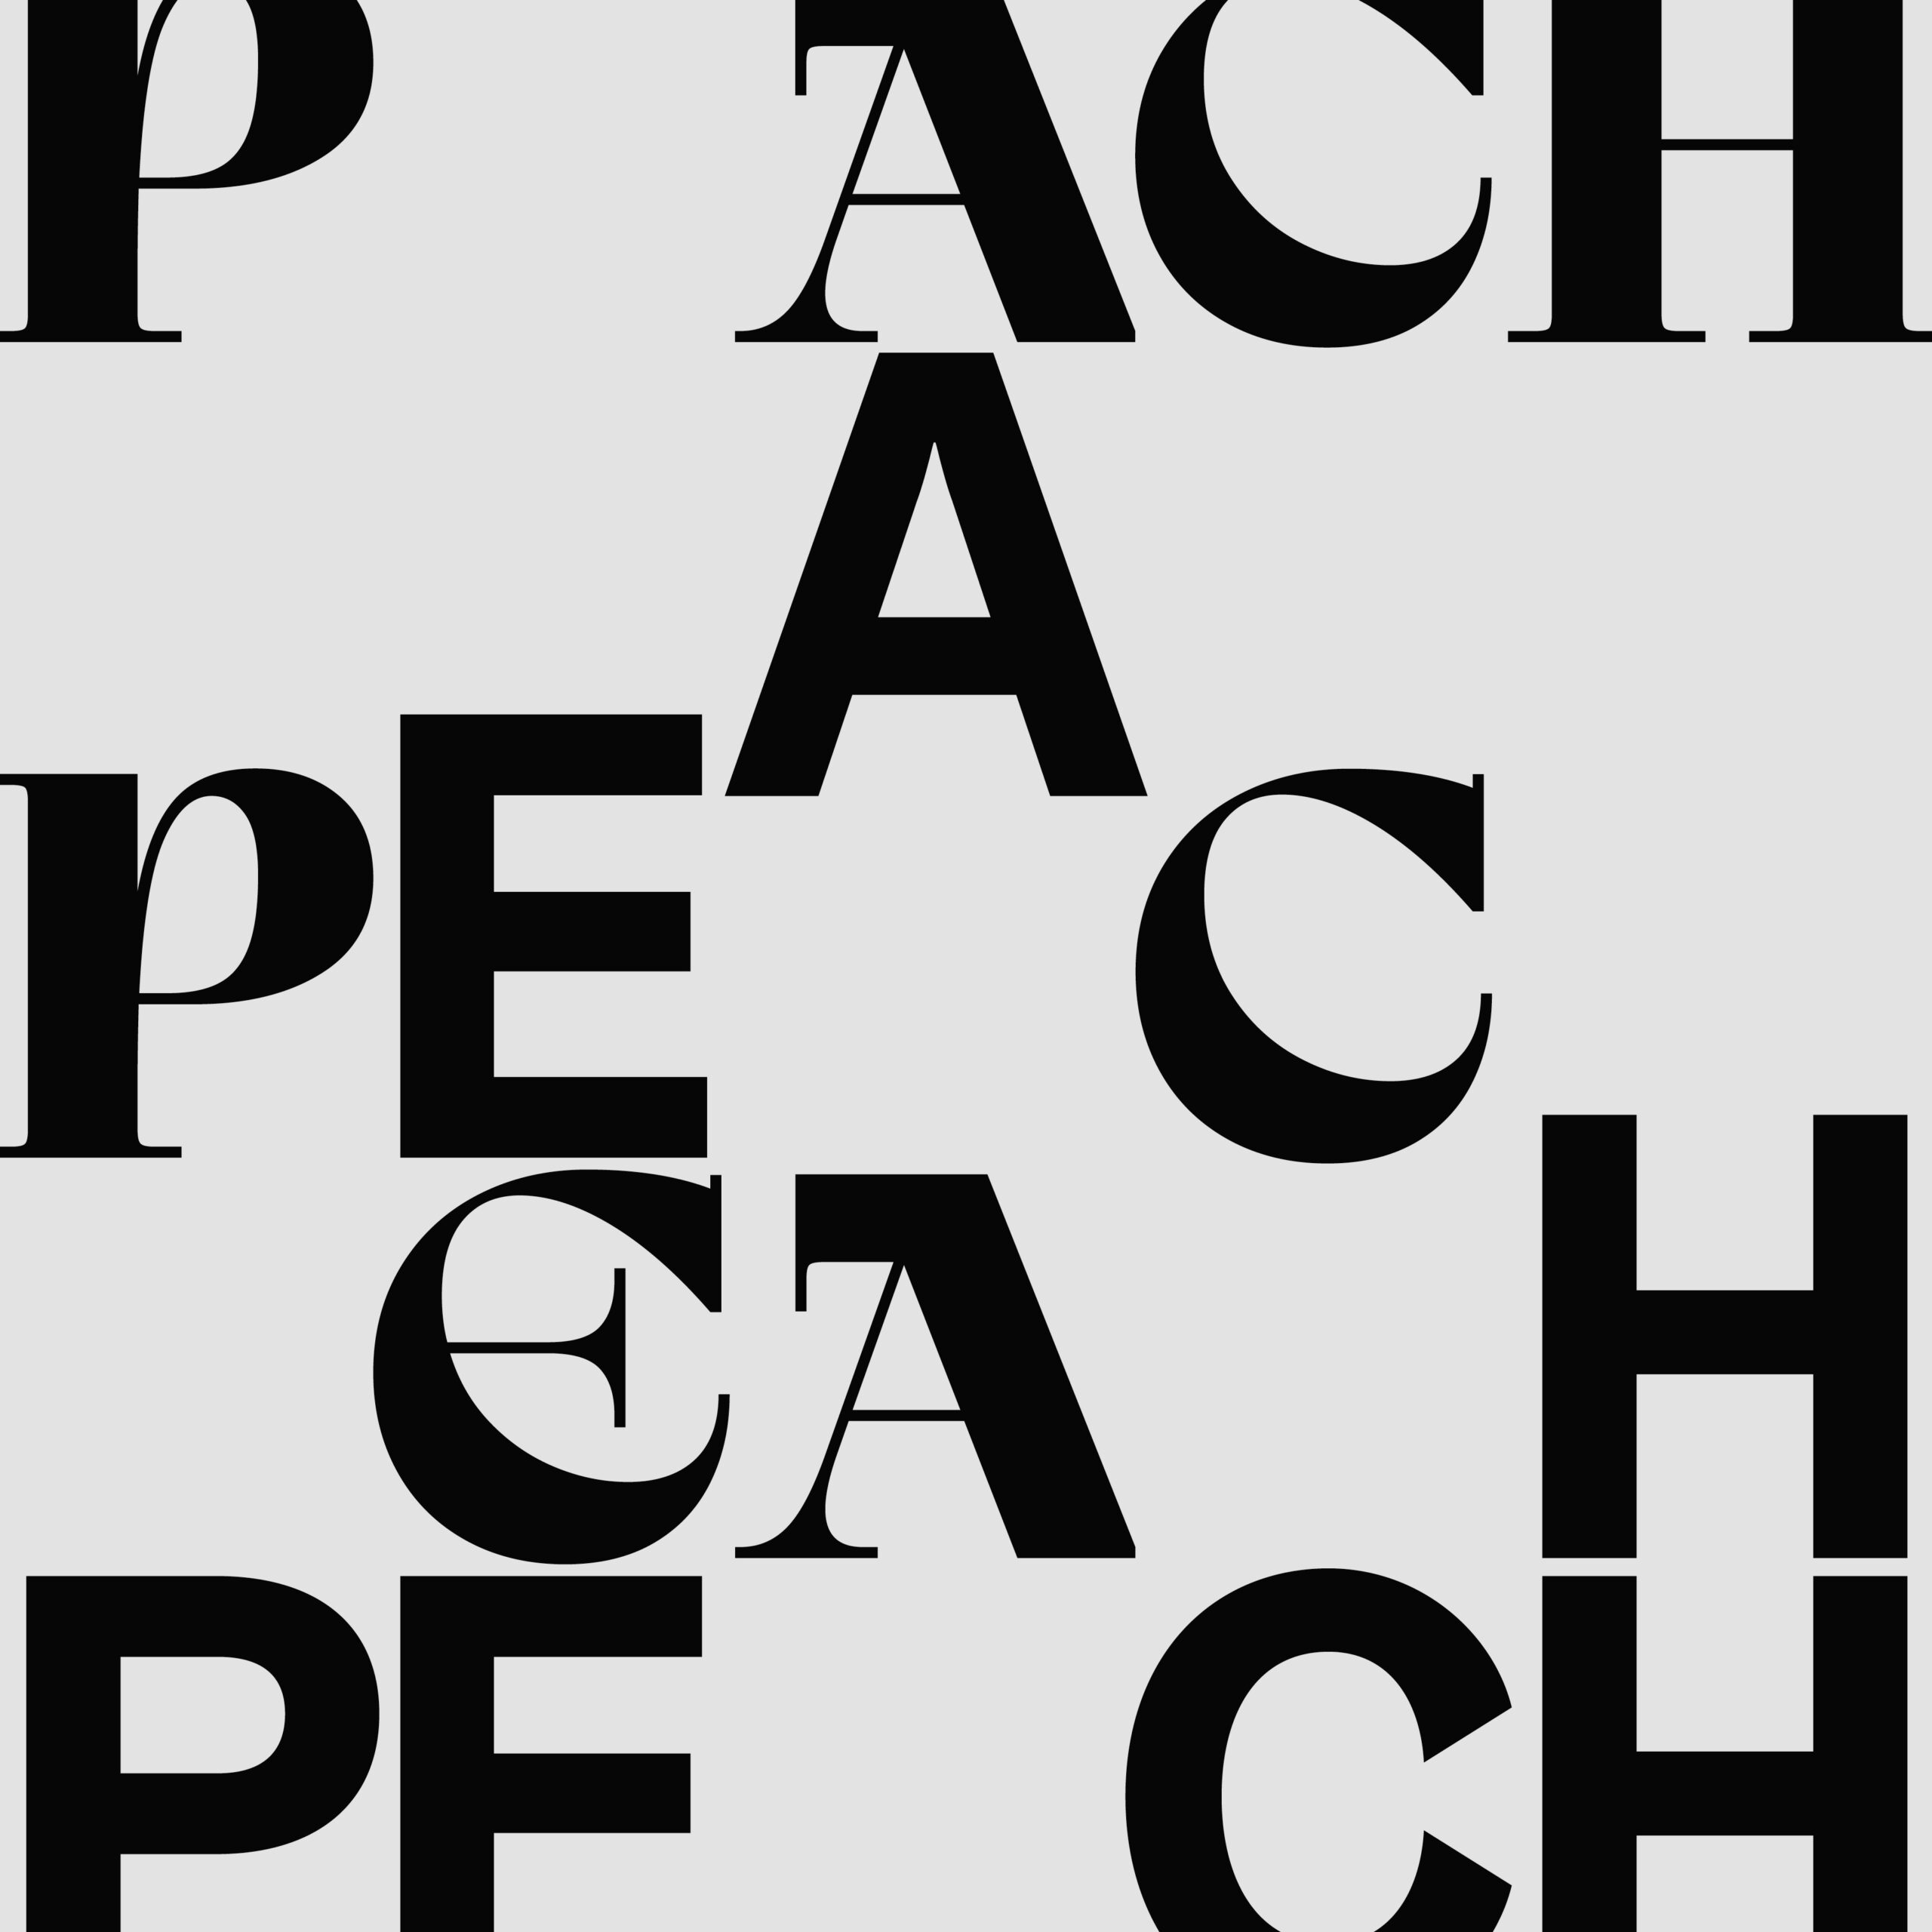 DEBUT ALBUM REVIEW: Peach by Peach